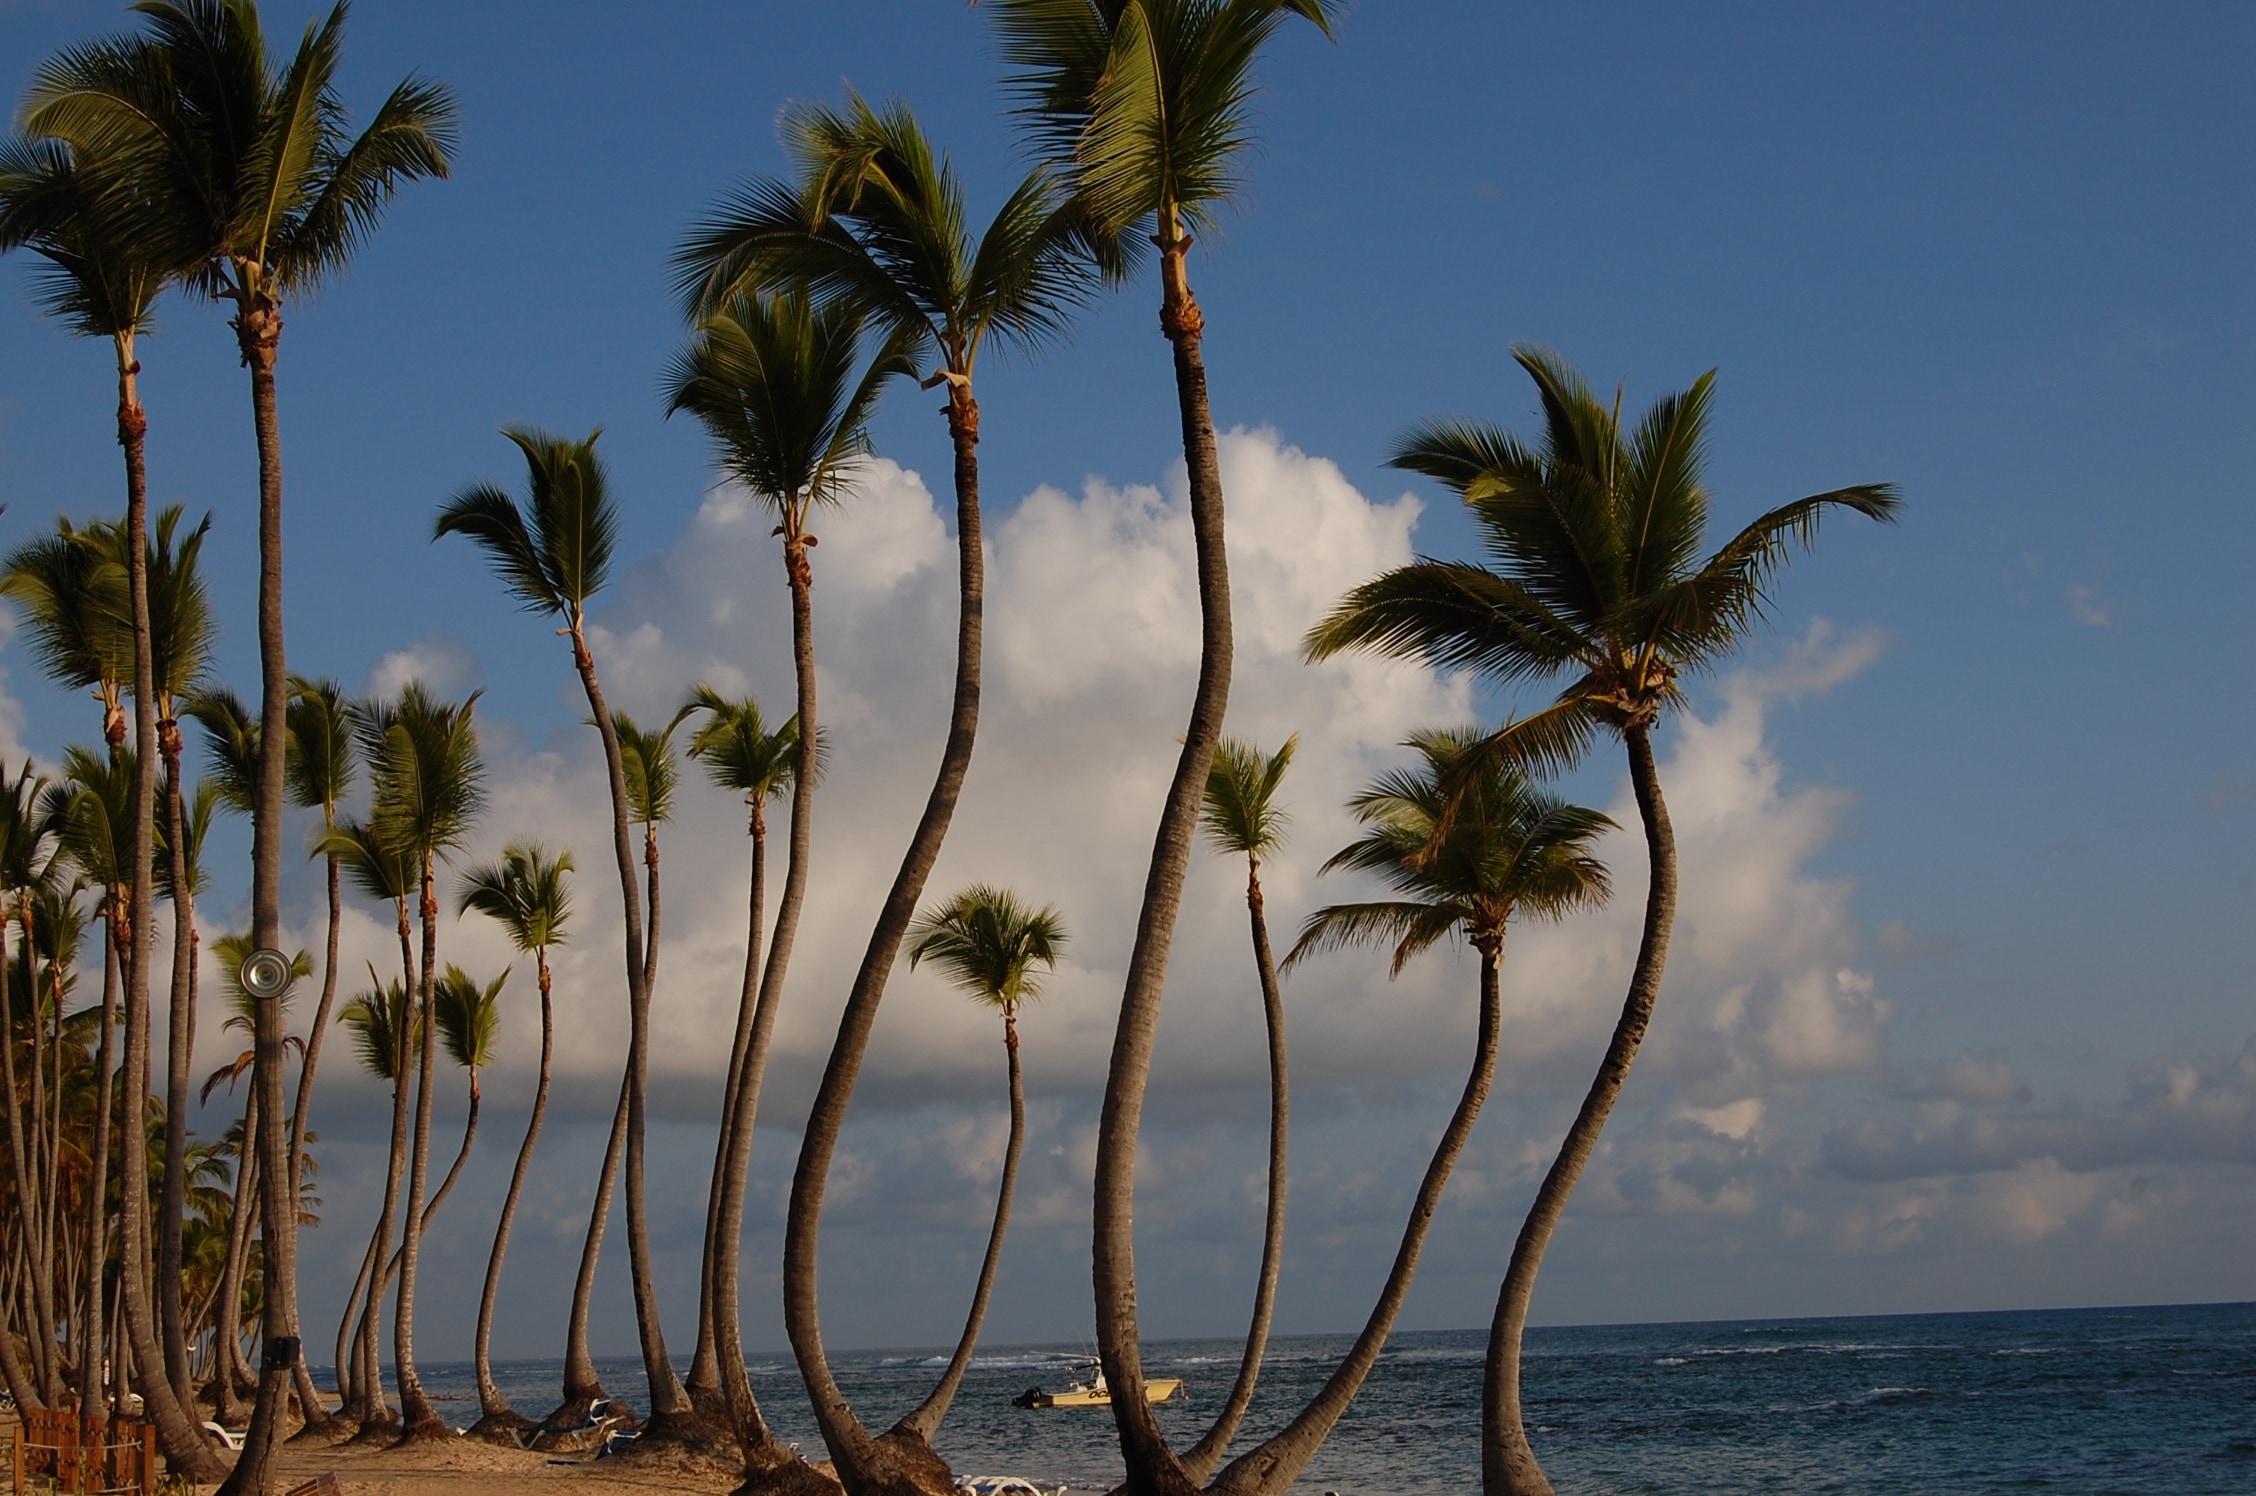 Hotel, Palms, Caribbean, Punta Cana, palm tree, tree